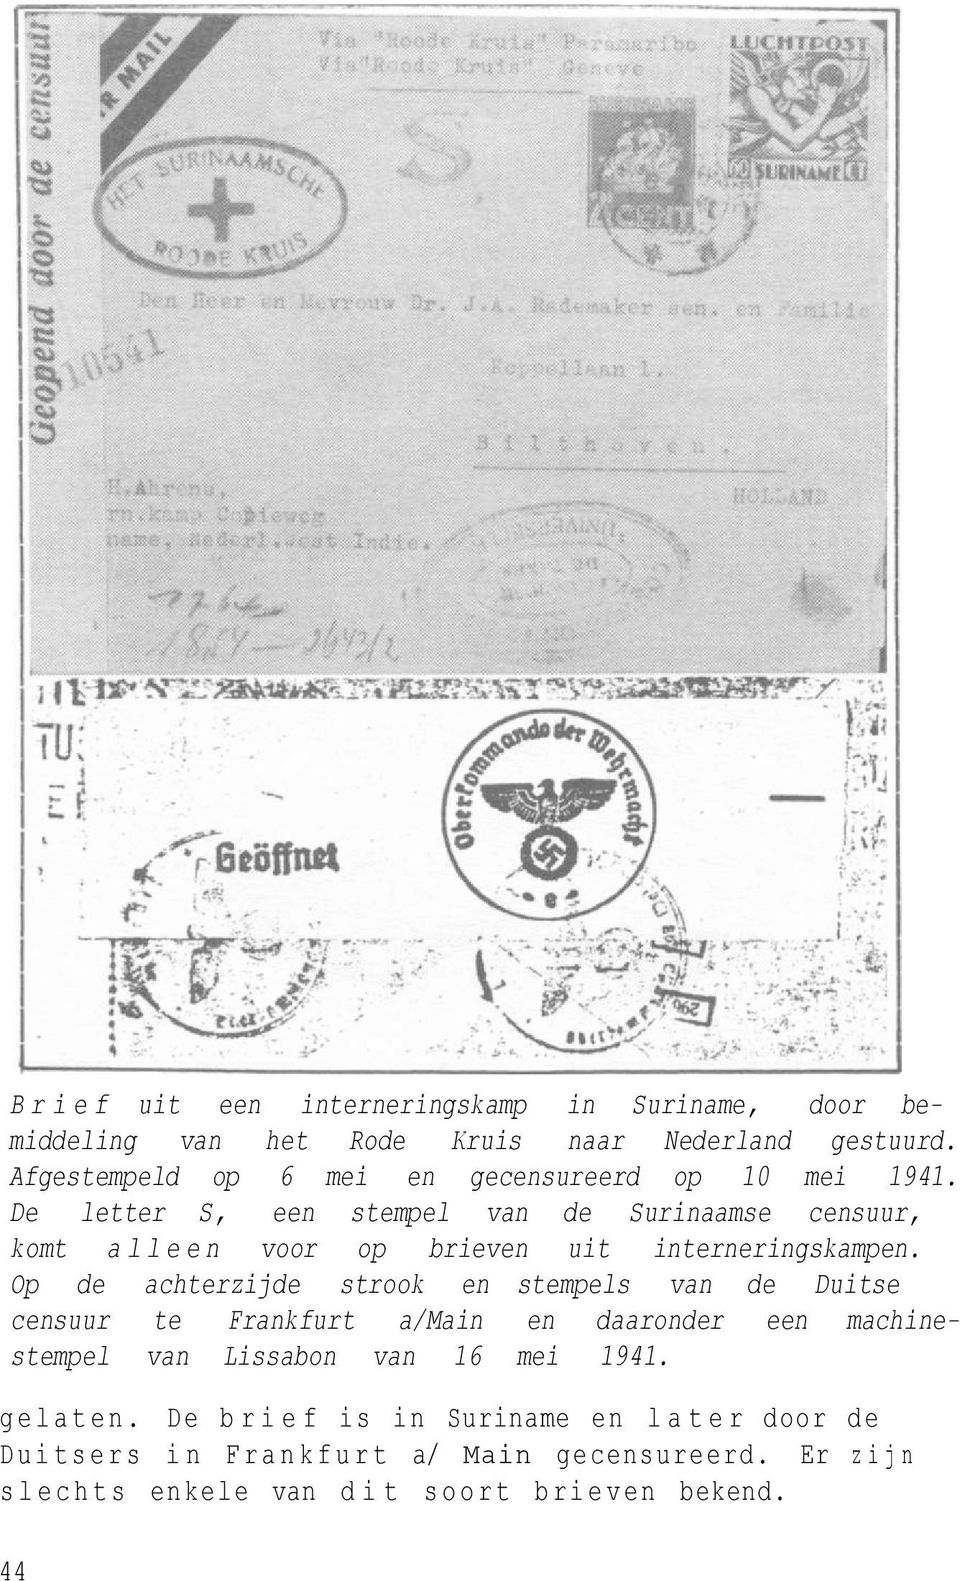 De letter S, een stempel van de Surinaamse censuur, komt alleen voor op brieven uit interneringskampen.